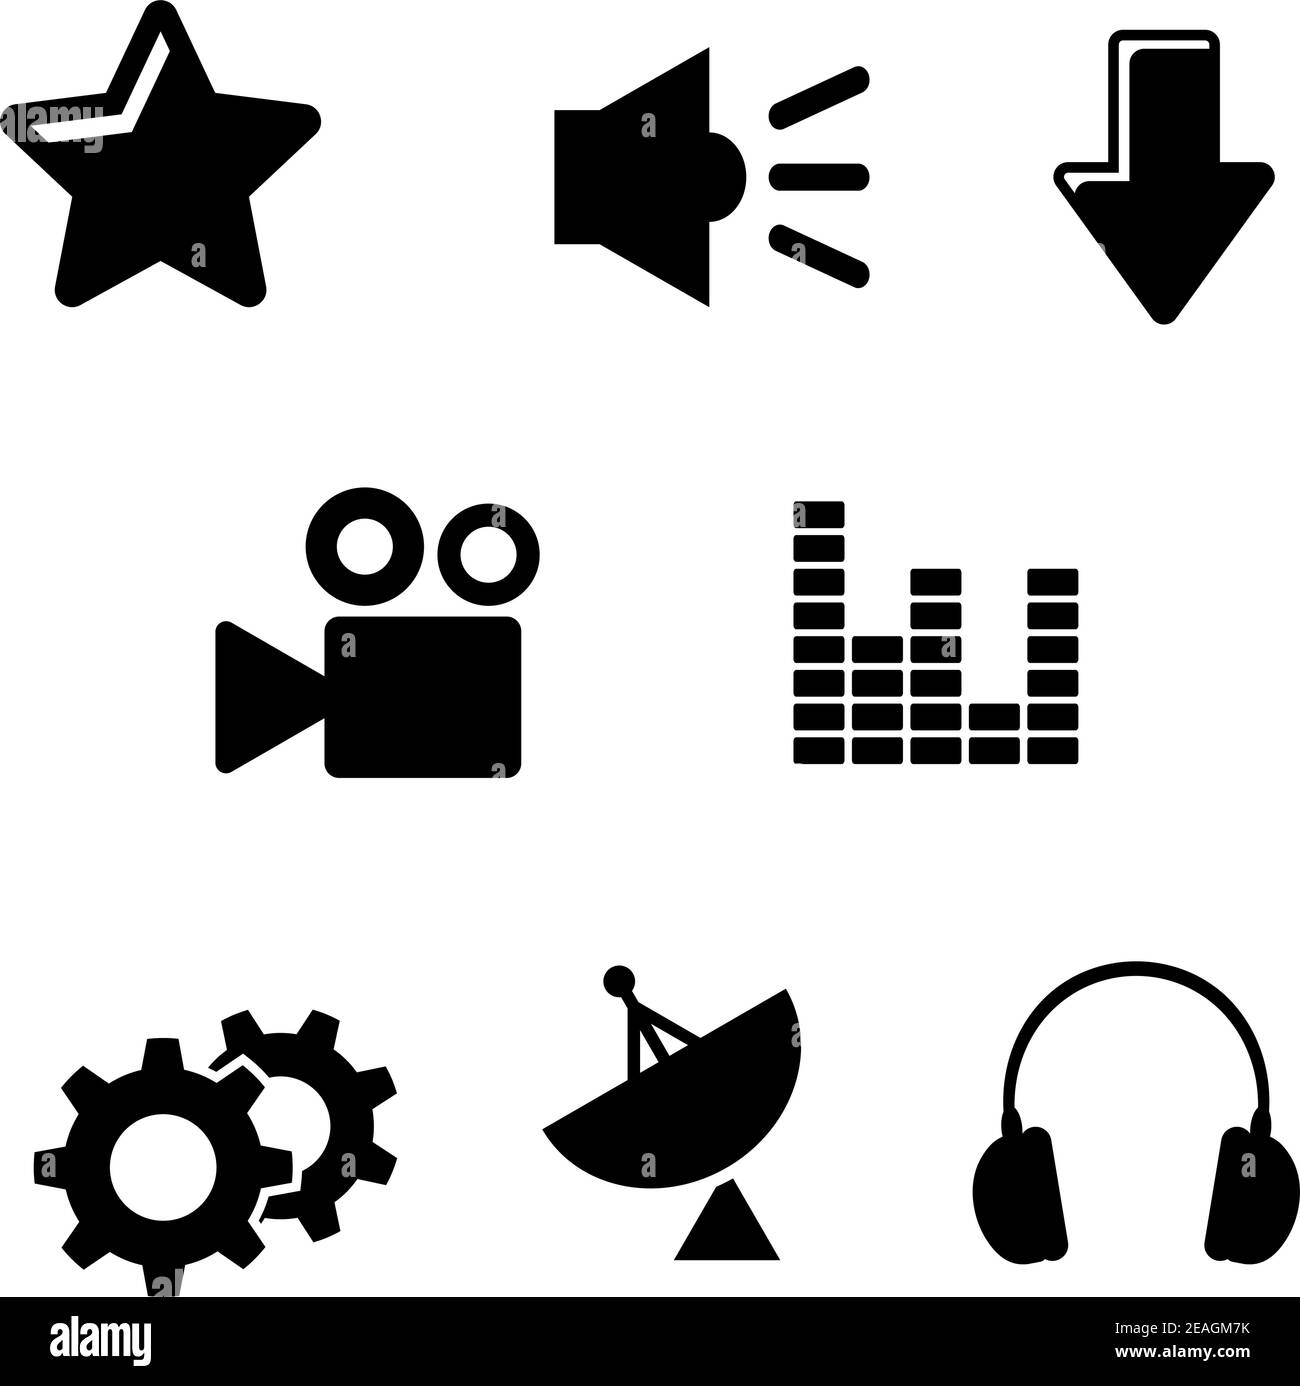 Multimedia-Symbole mit Satelliten-, Ton-, Film-, Getriebe-, Audio-, Stern-  und Download-Elementen Stock-Vektorgrafik - Alamy